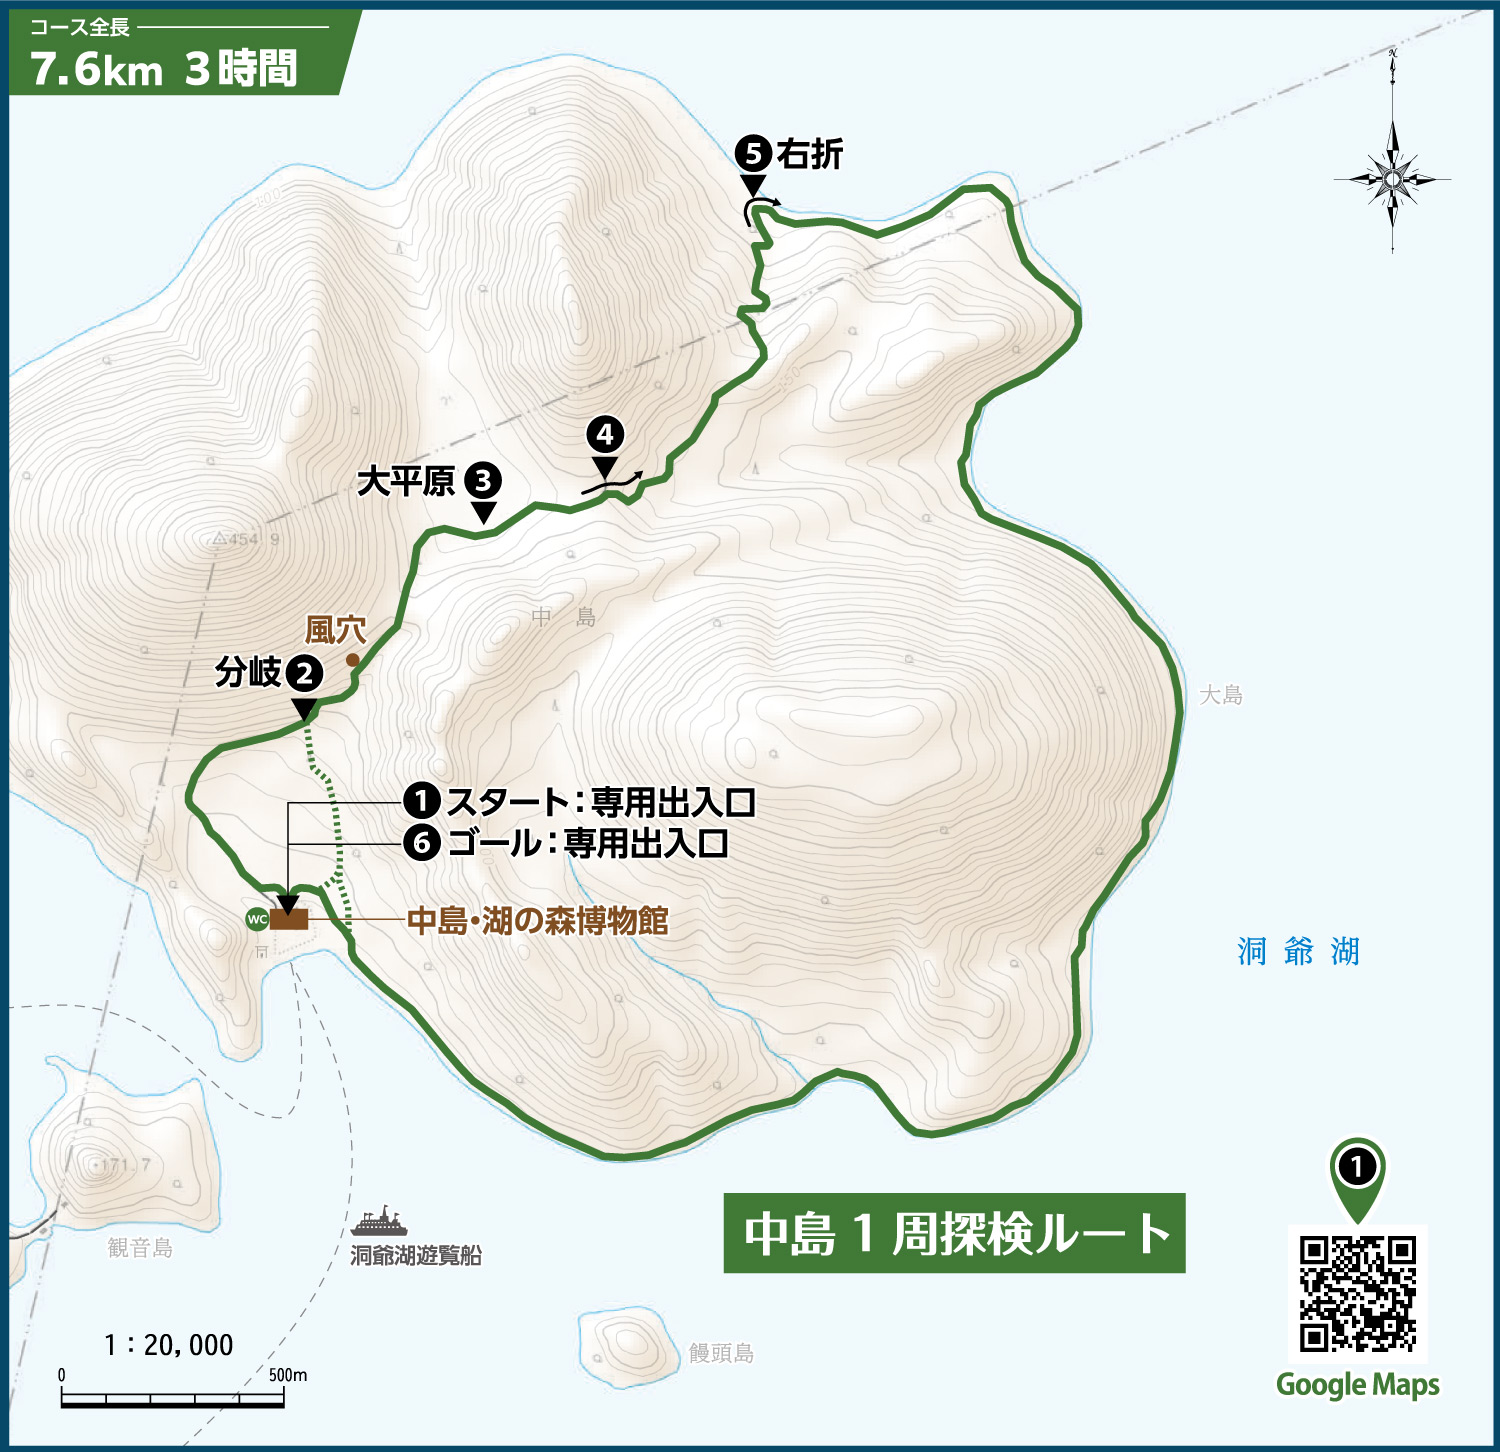 ナショナルジオパークによる「中島」案内図